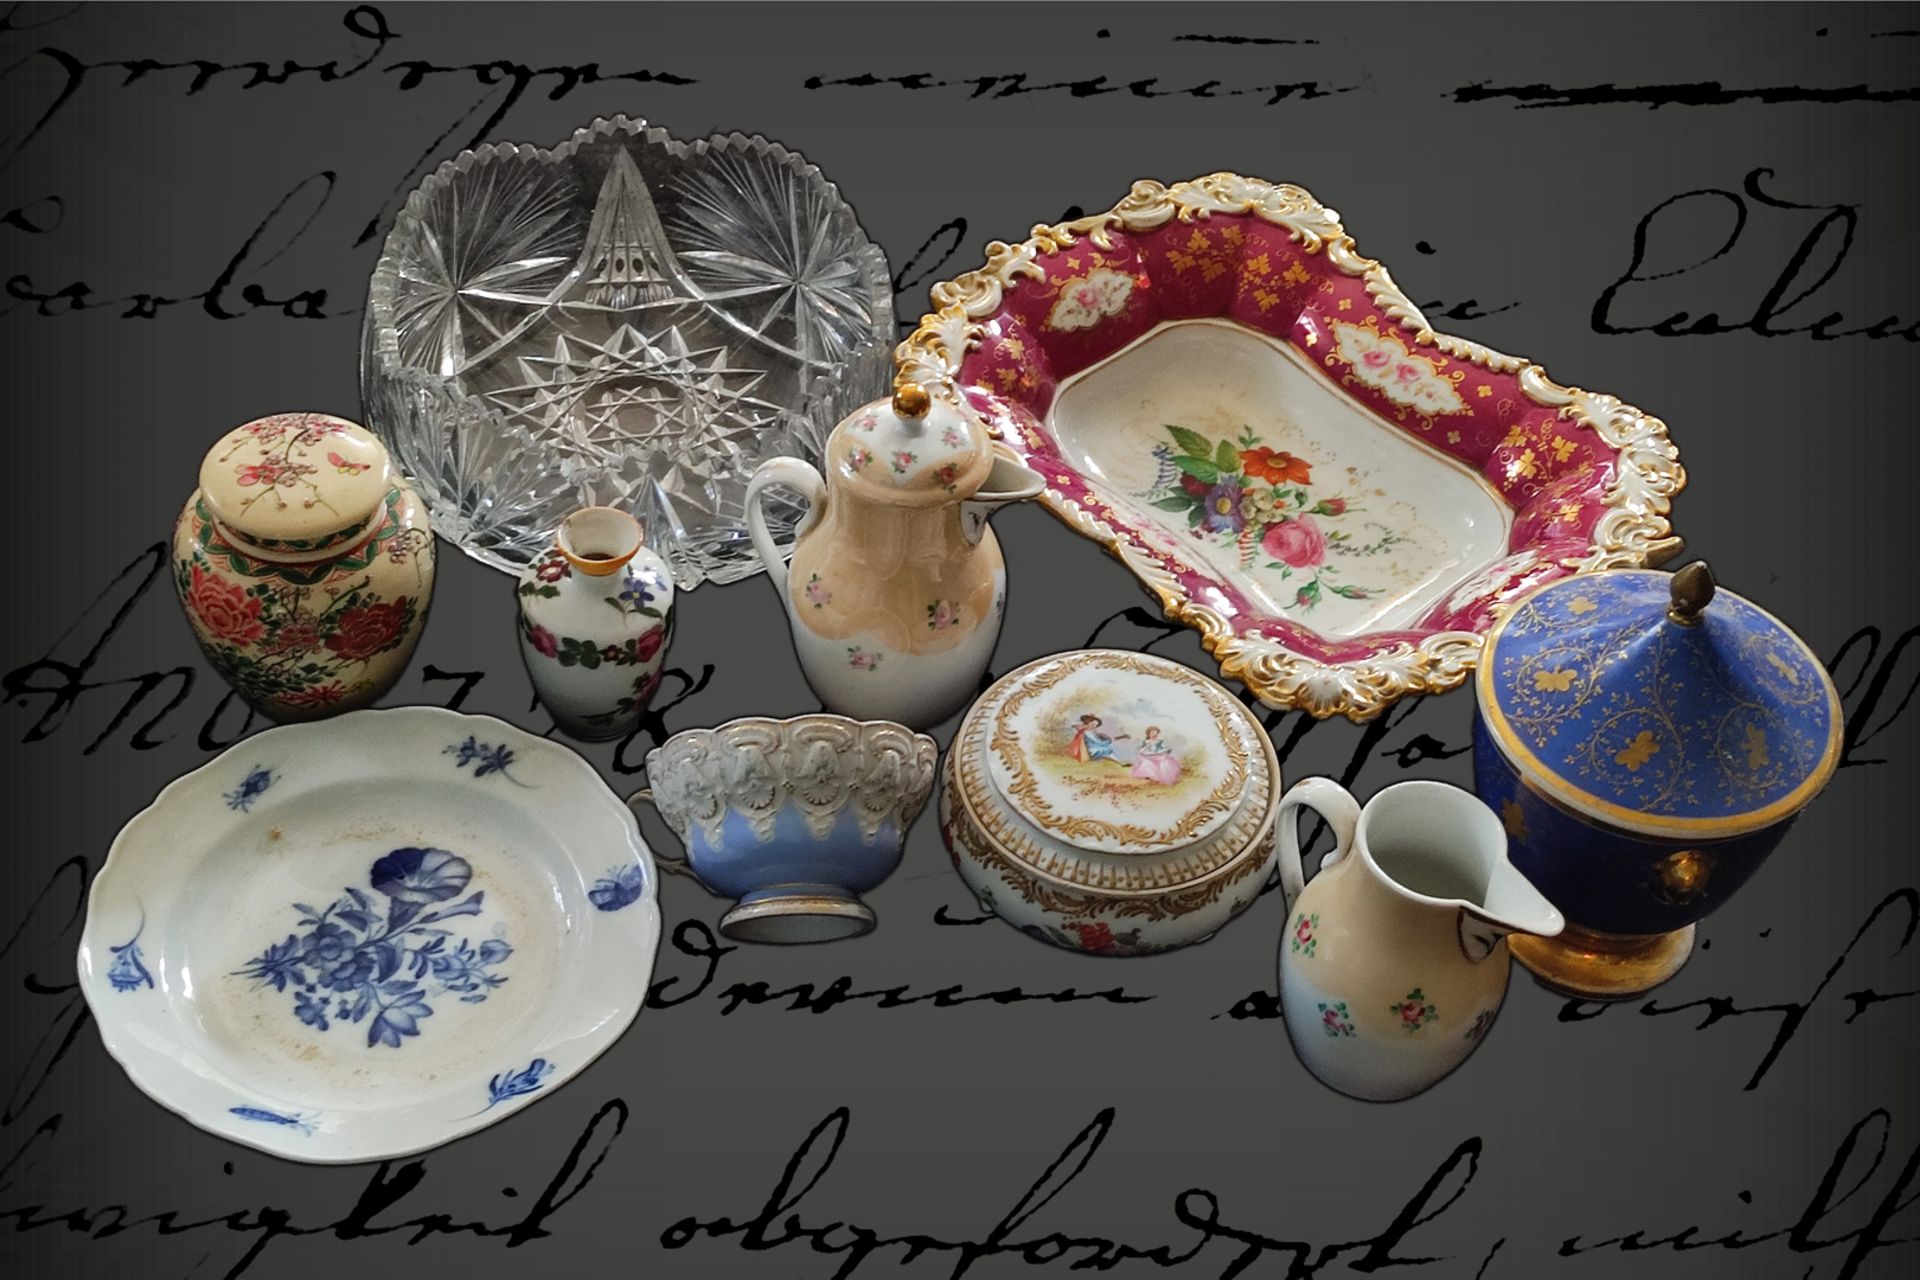 Großes Konv. Porzellanteile, meist um 1900, darunter kleiner Meissen Teller und Tasse, teilweise